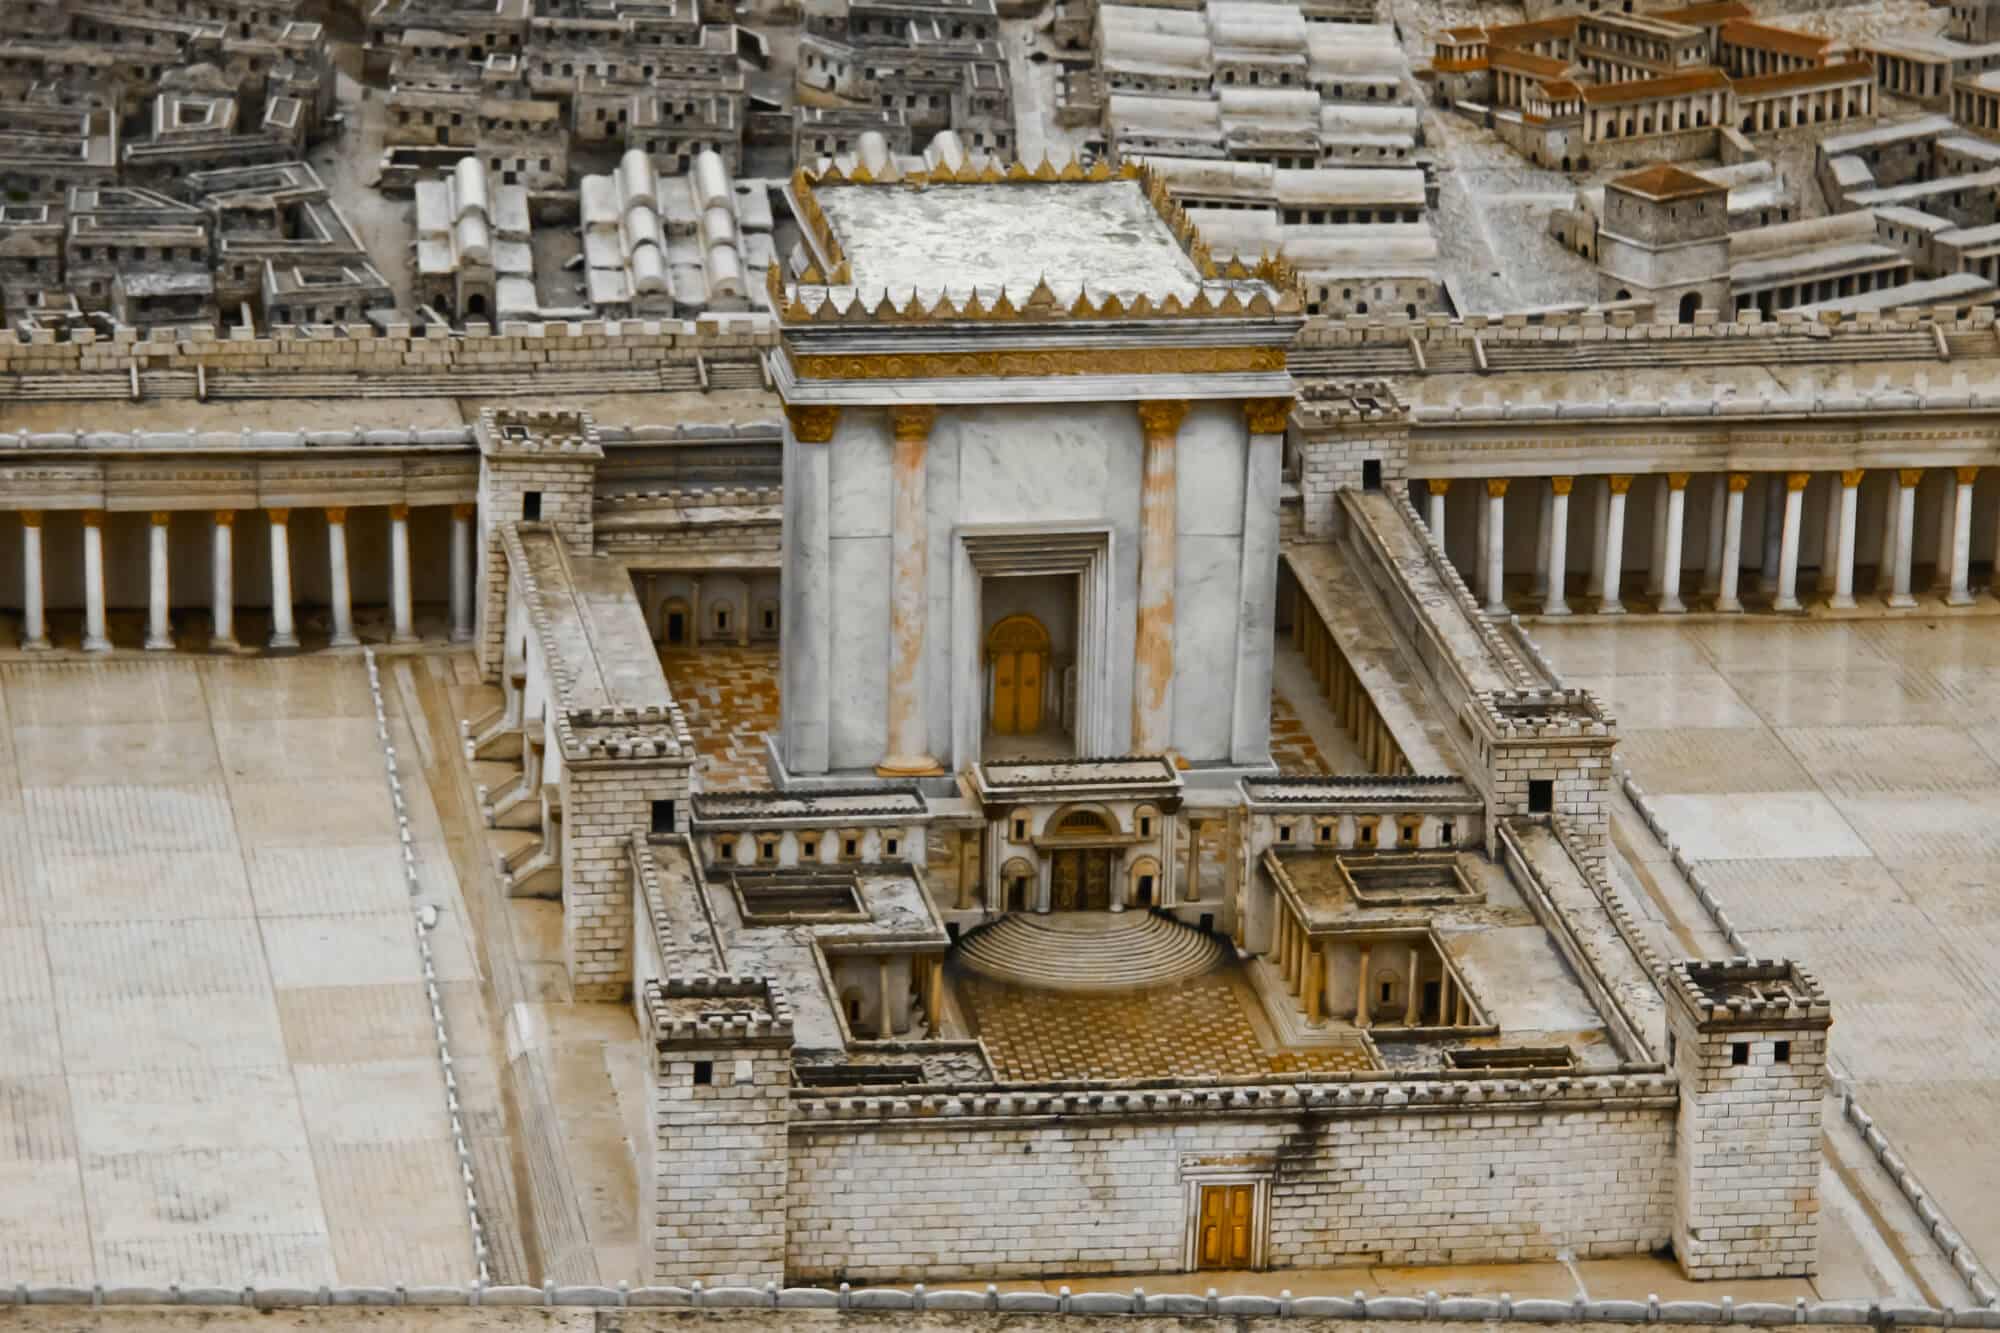 בית המקדש השני, אם כי המאוחר יותר - זה של הורדוס בדגם ירושלים במוזיאון ישראל המחשה: depositphotos.com